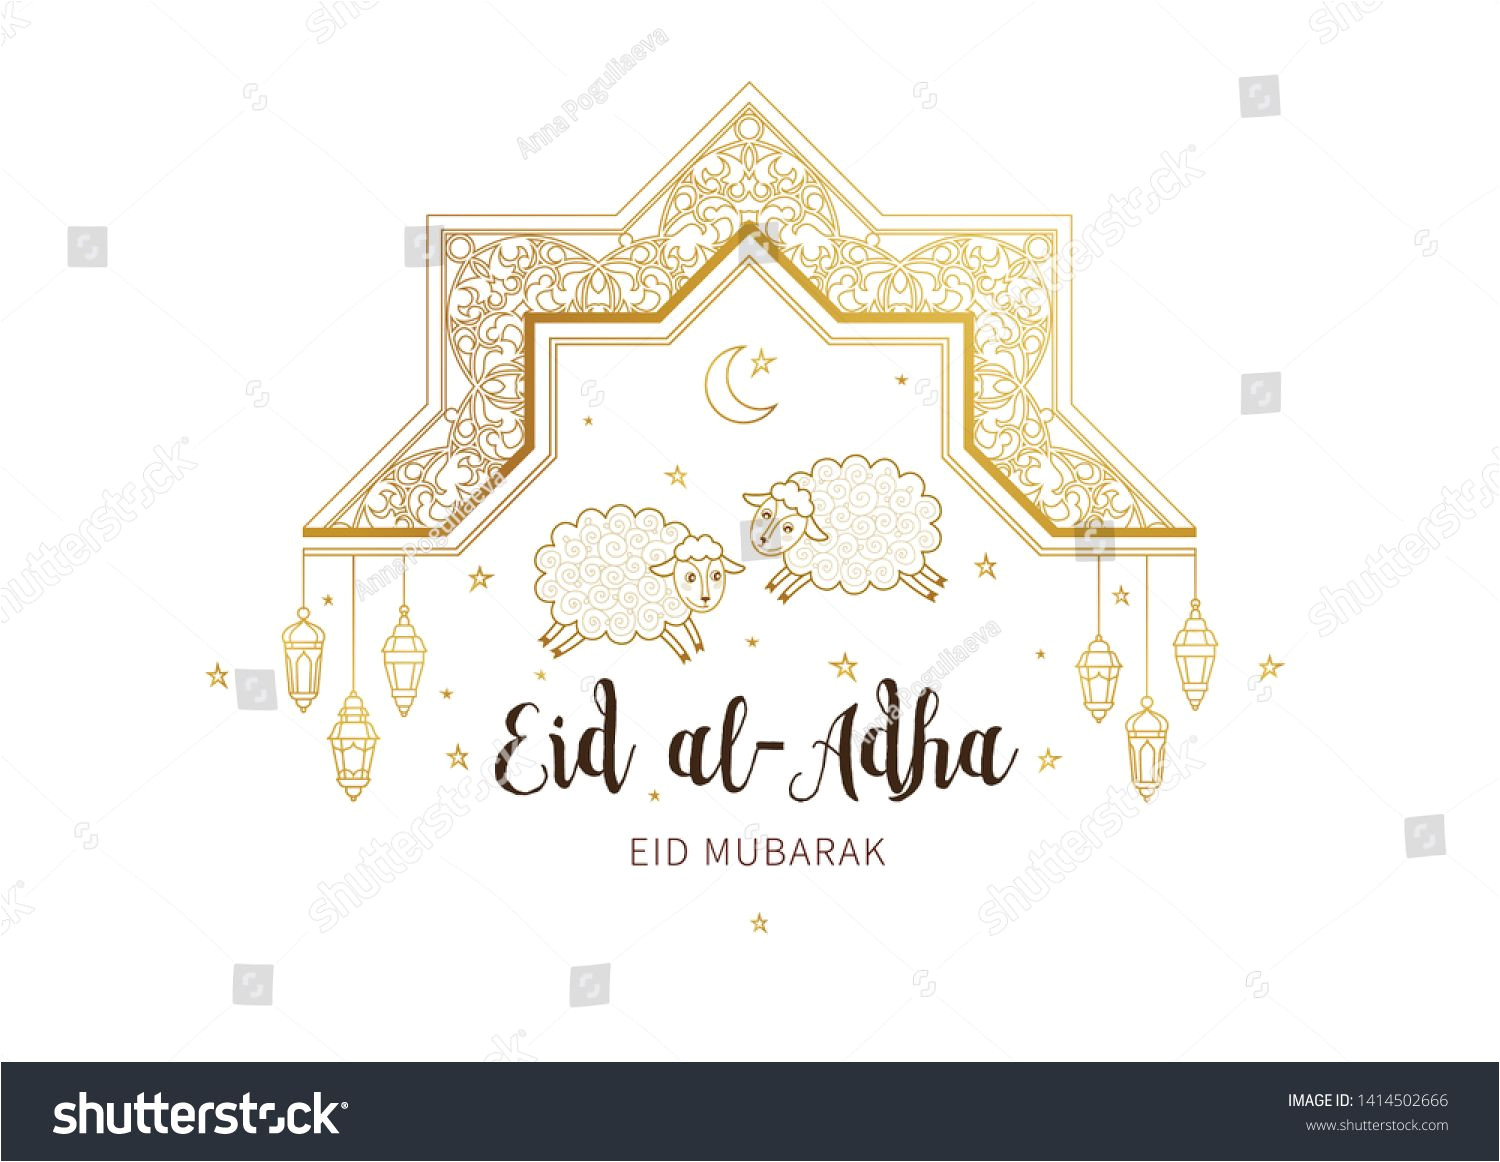 Eid Al Adha Card Design Vector Muslim Holiday Eid Al Adha Card Banner with Sheep